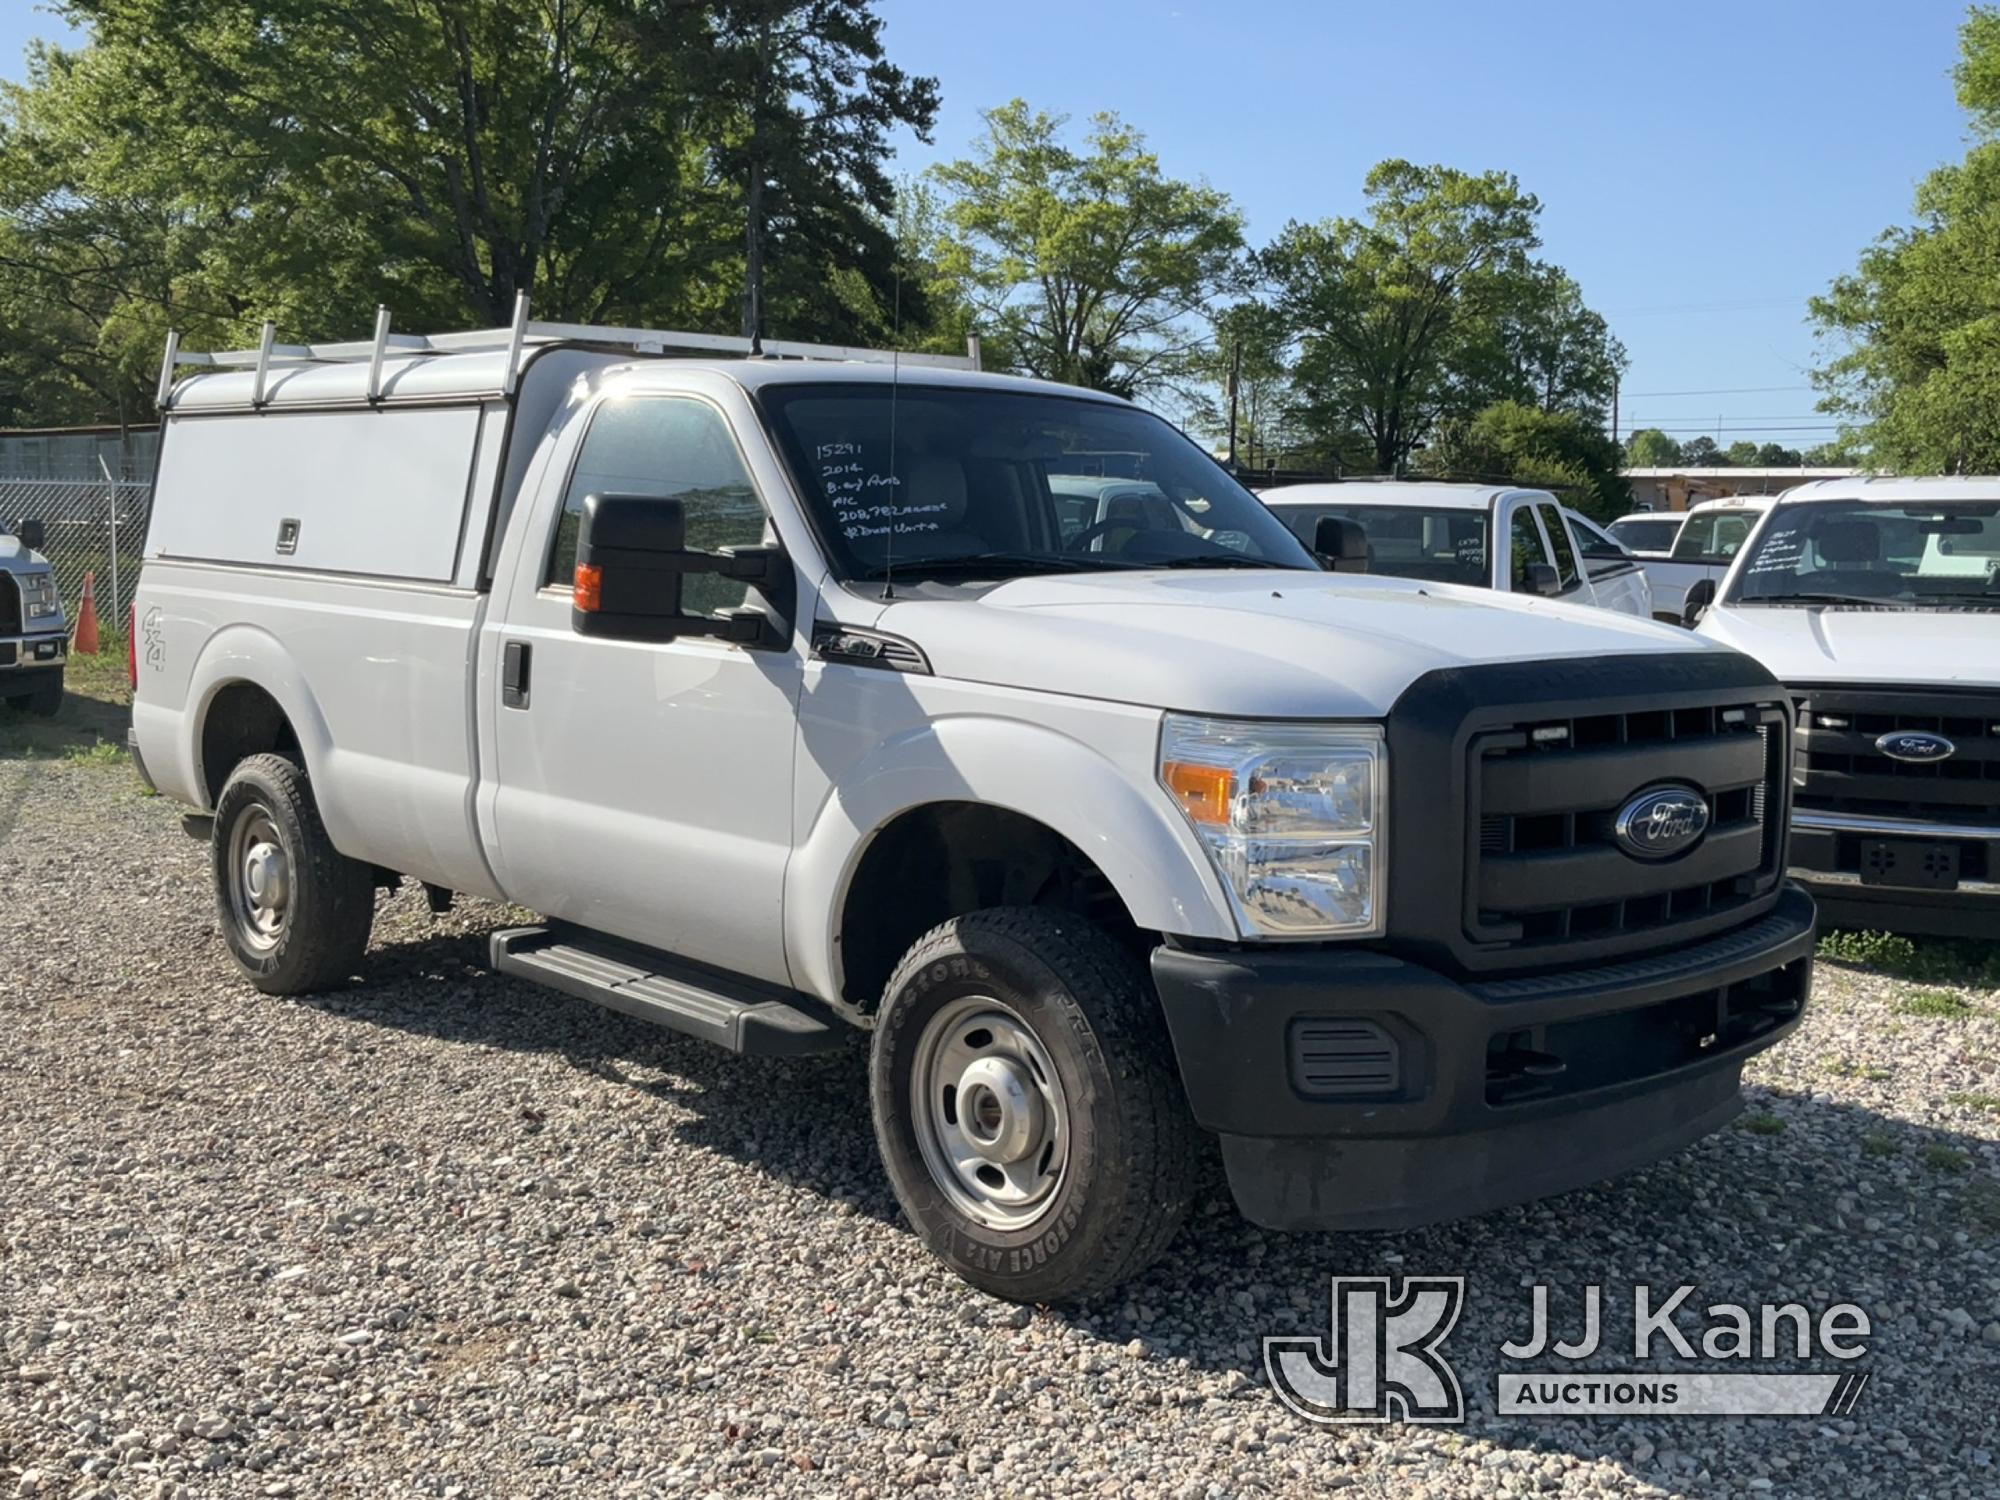 (Charlotte, NC) 2014 Ford F250 4x4 Pickup Truck Duke Unit) (Runs & Moves